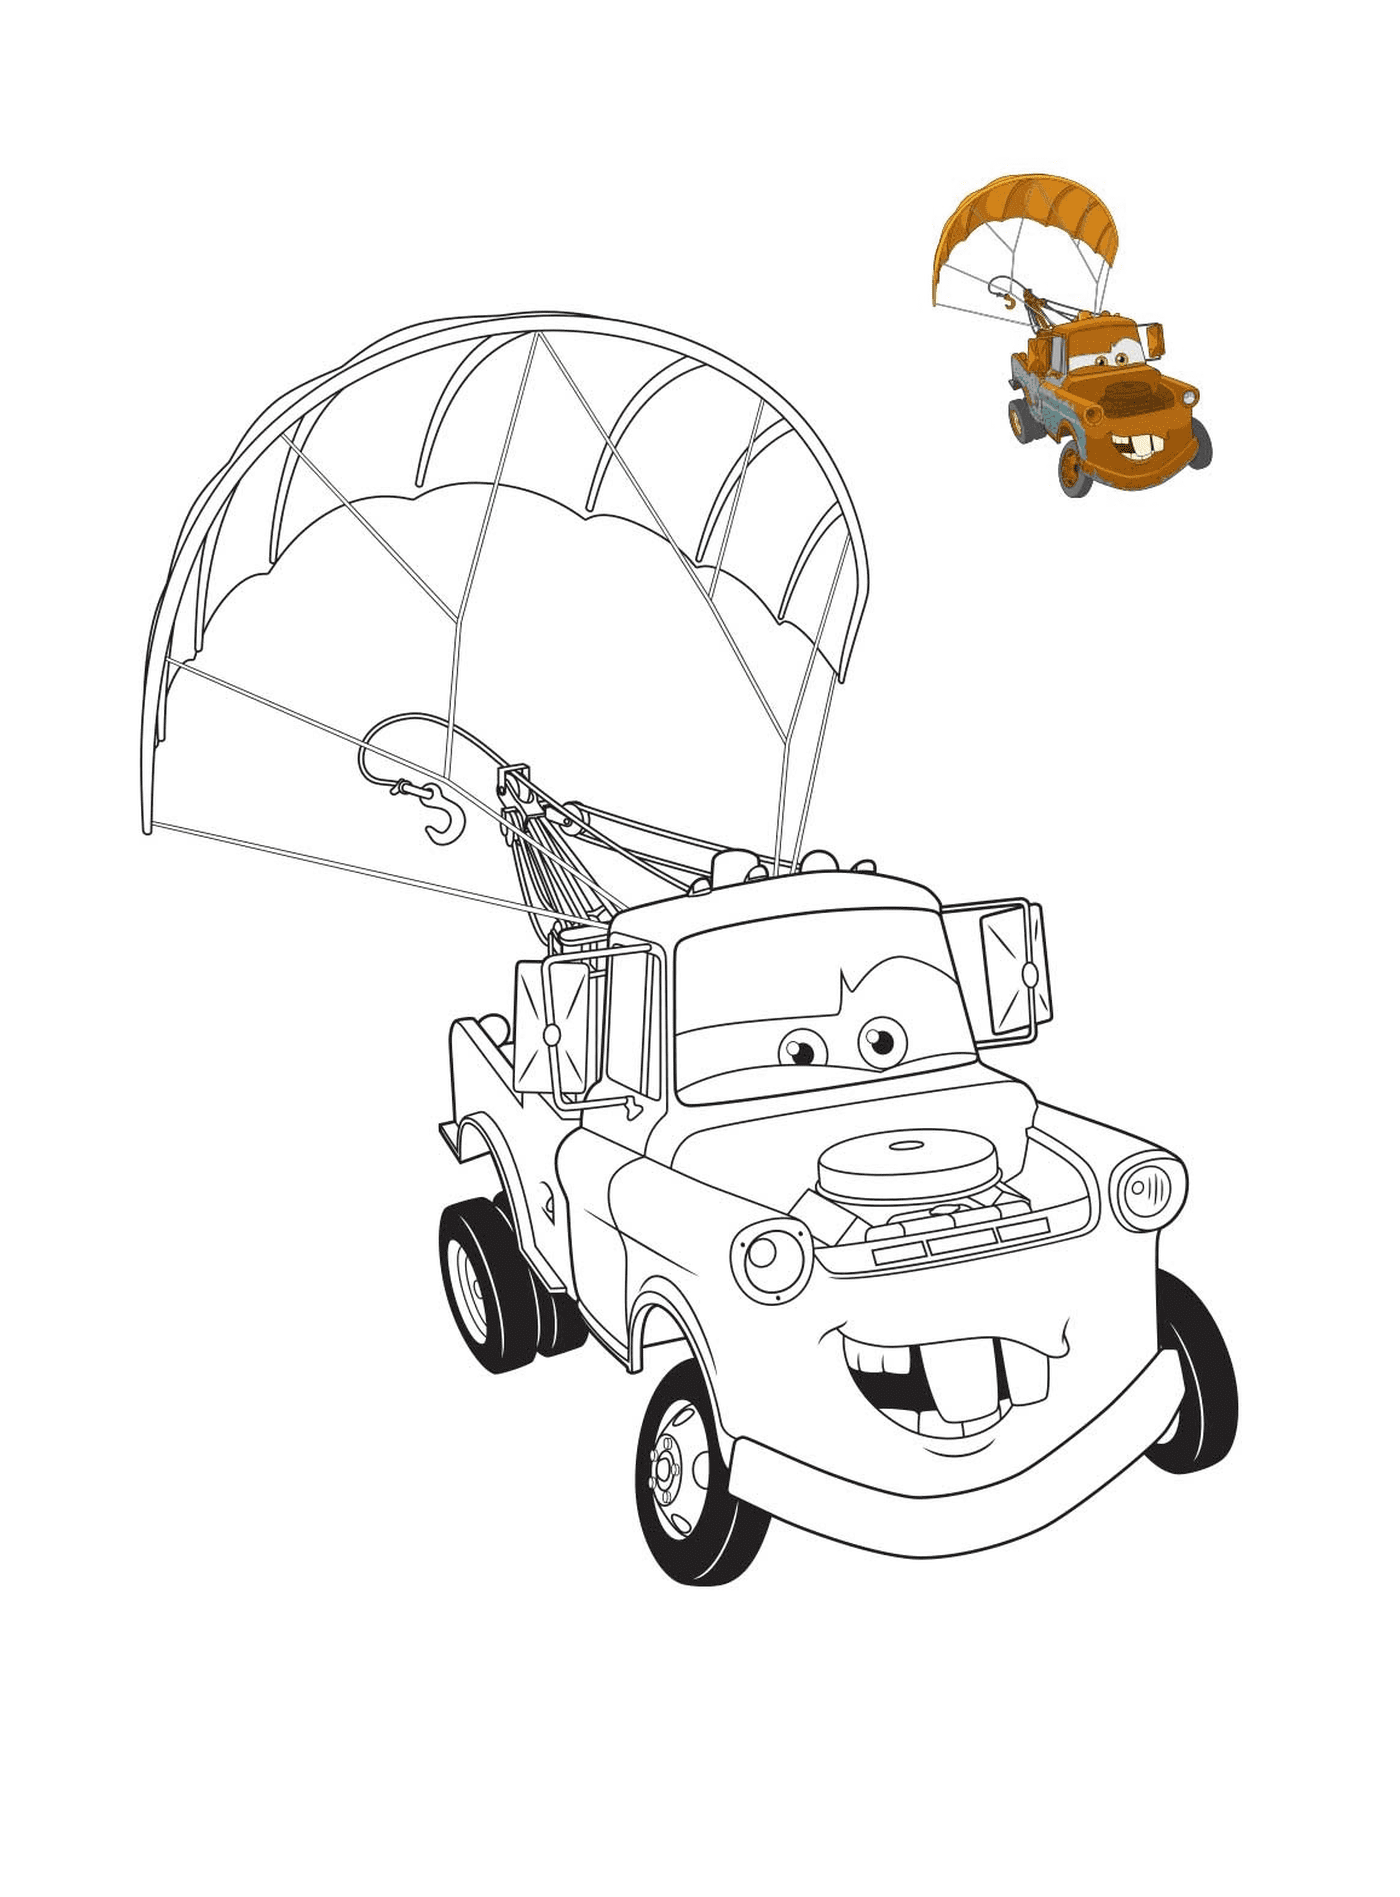  سيّارات أفلام 3، (مارتن) شاحنة القطر مع الملونة، شاحنة قطرة مع مظلة 